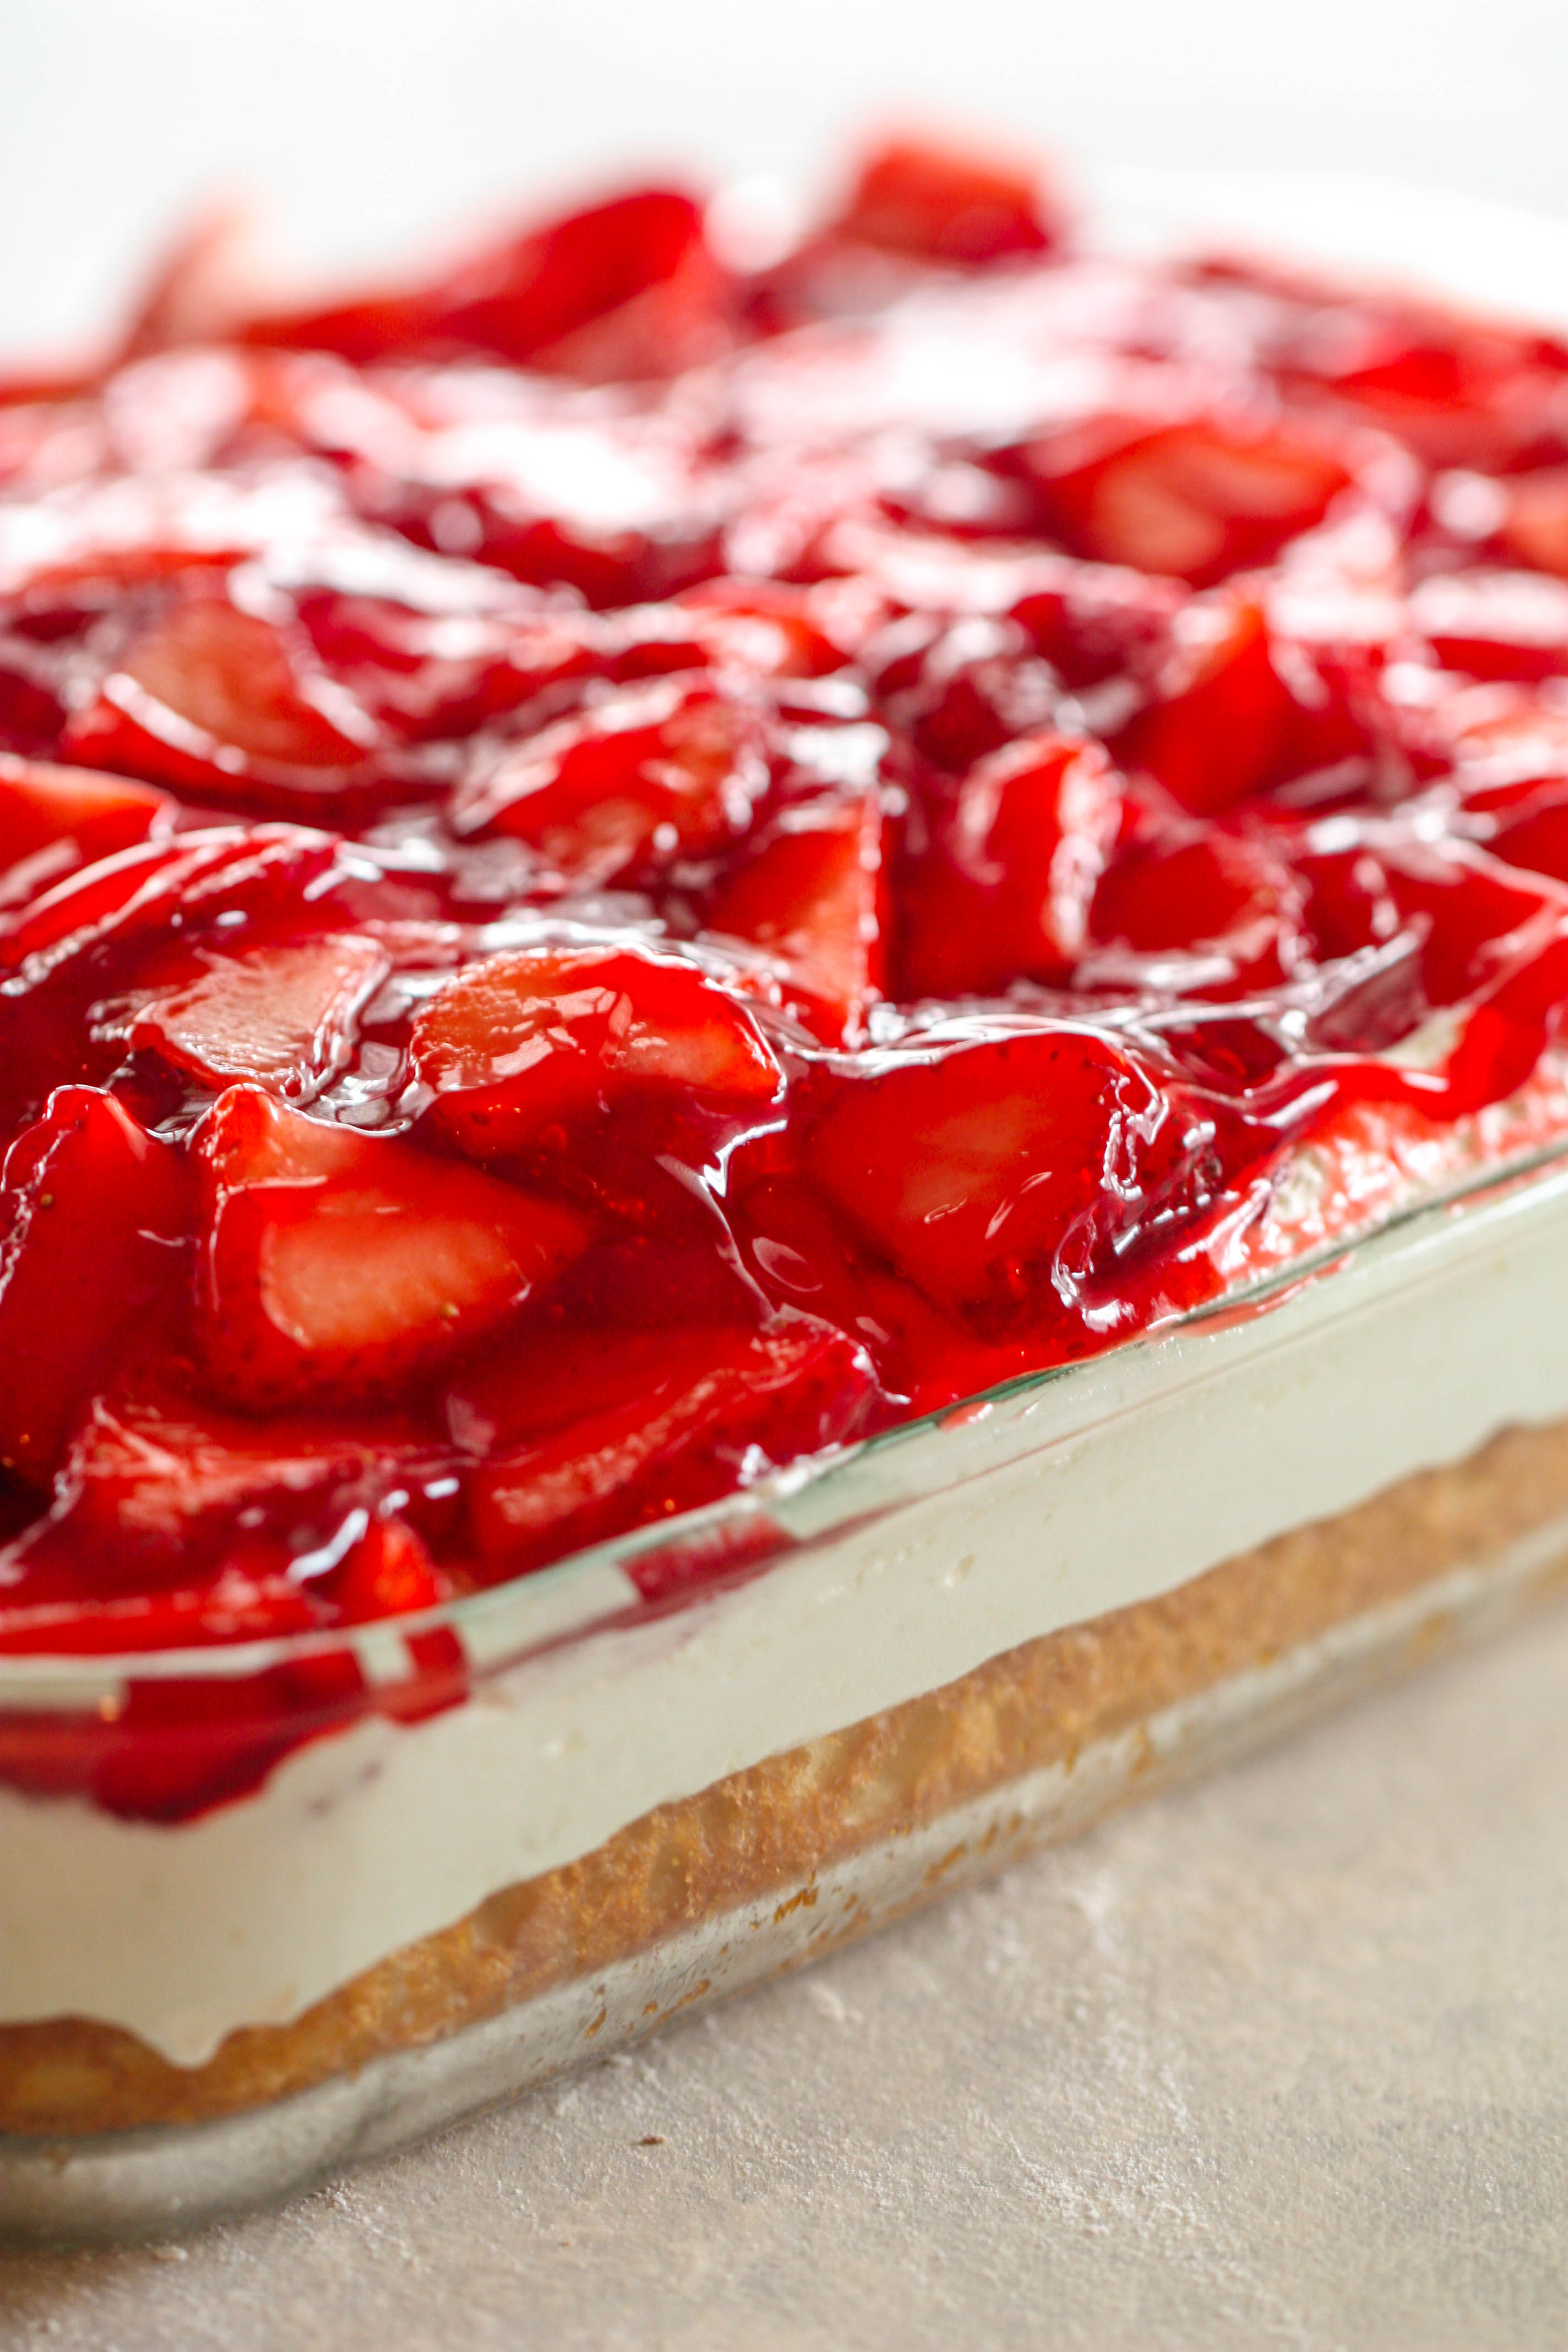 Strawberries and Cream Cake Recipe